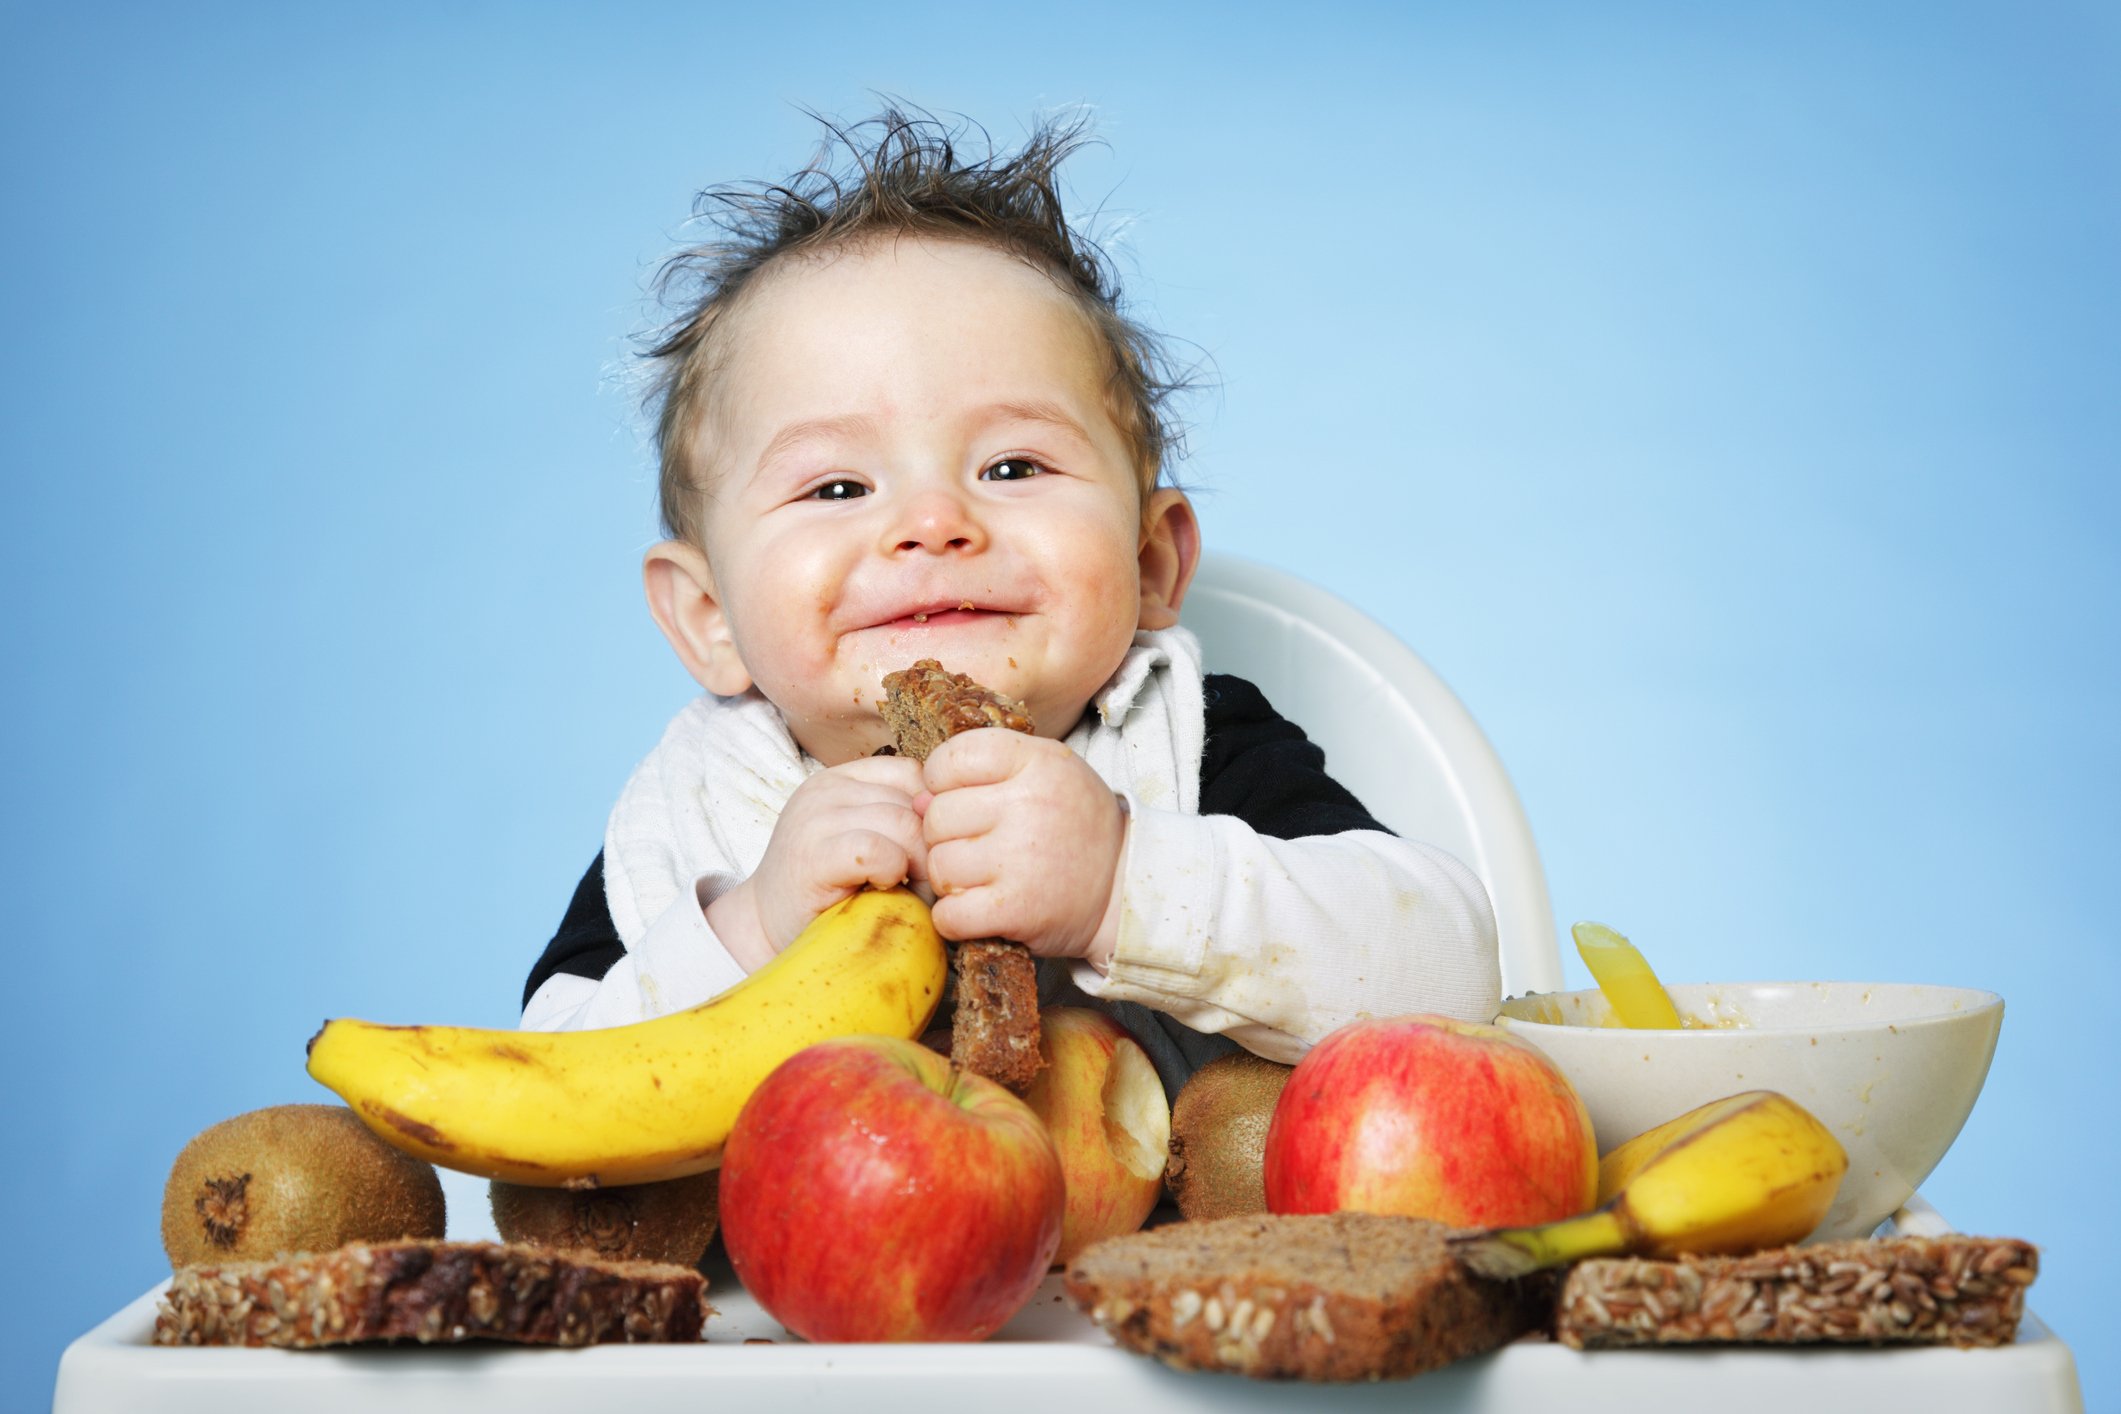 Употребление детьми готовых домашних блюд предоставленных родителями. Еда для детей. Питание детей. Здоровое питание для детей. Ребенок ест.